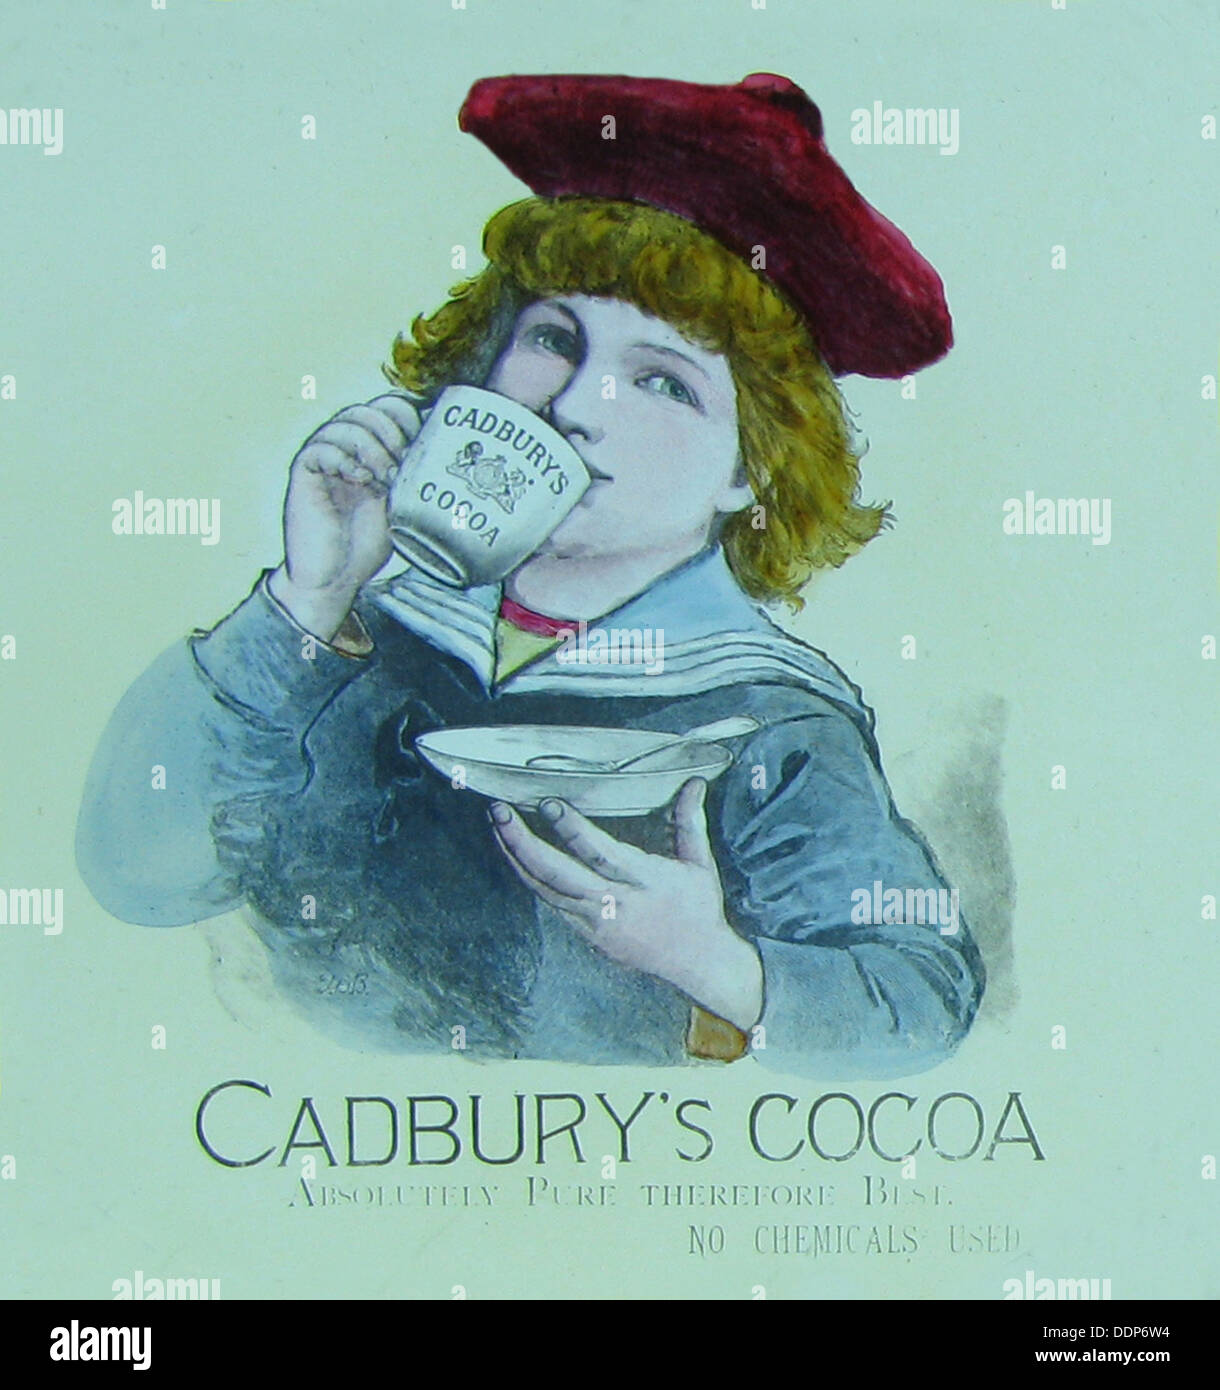 Cadbury's annuncio di cacao periodo Vittoriano Foto Stock